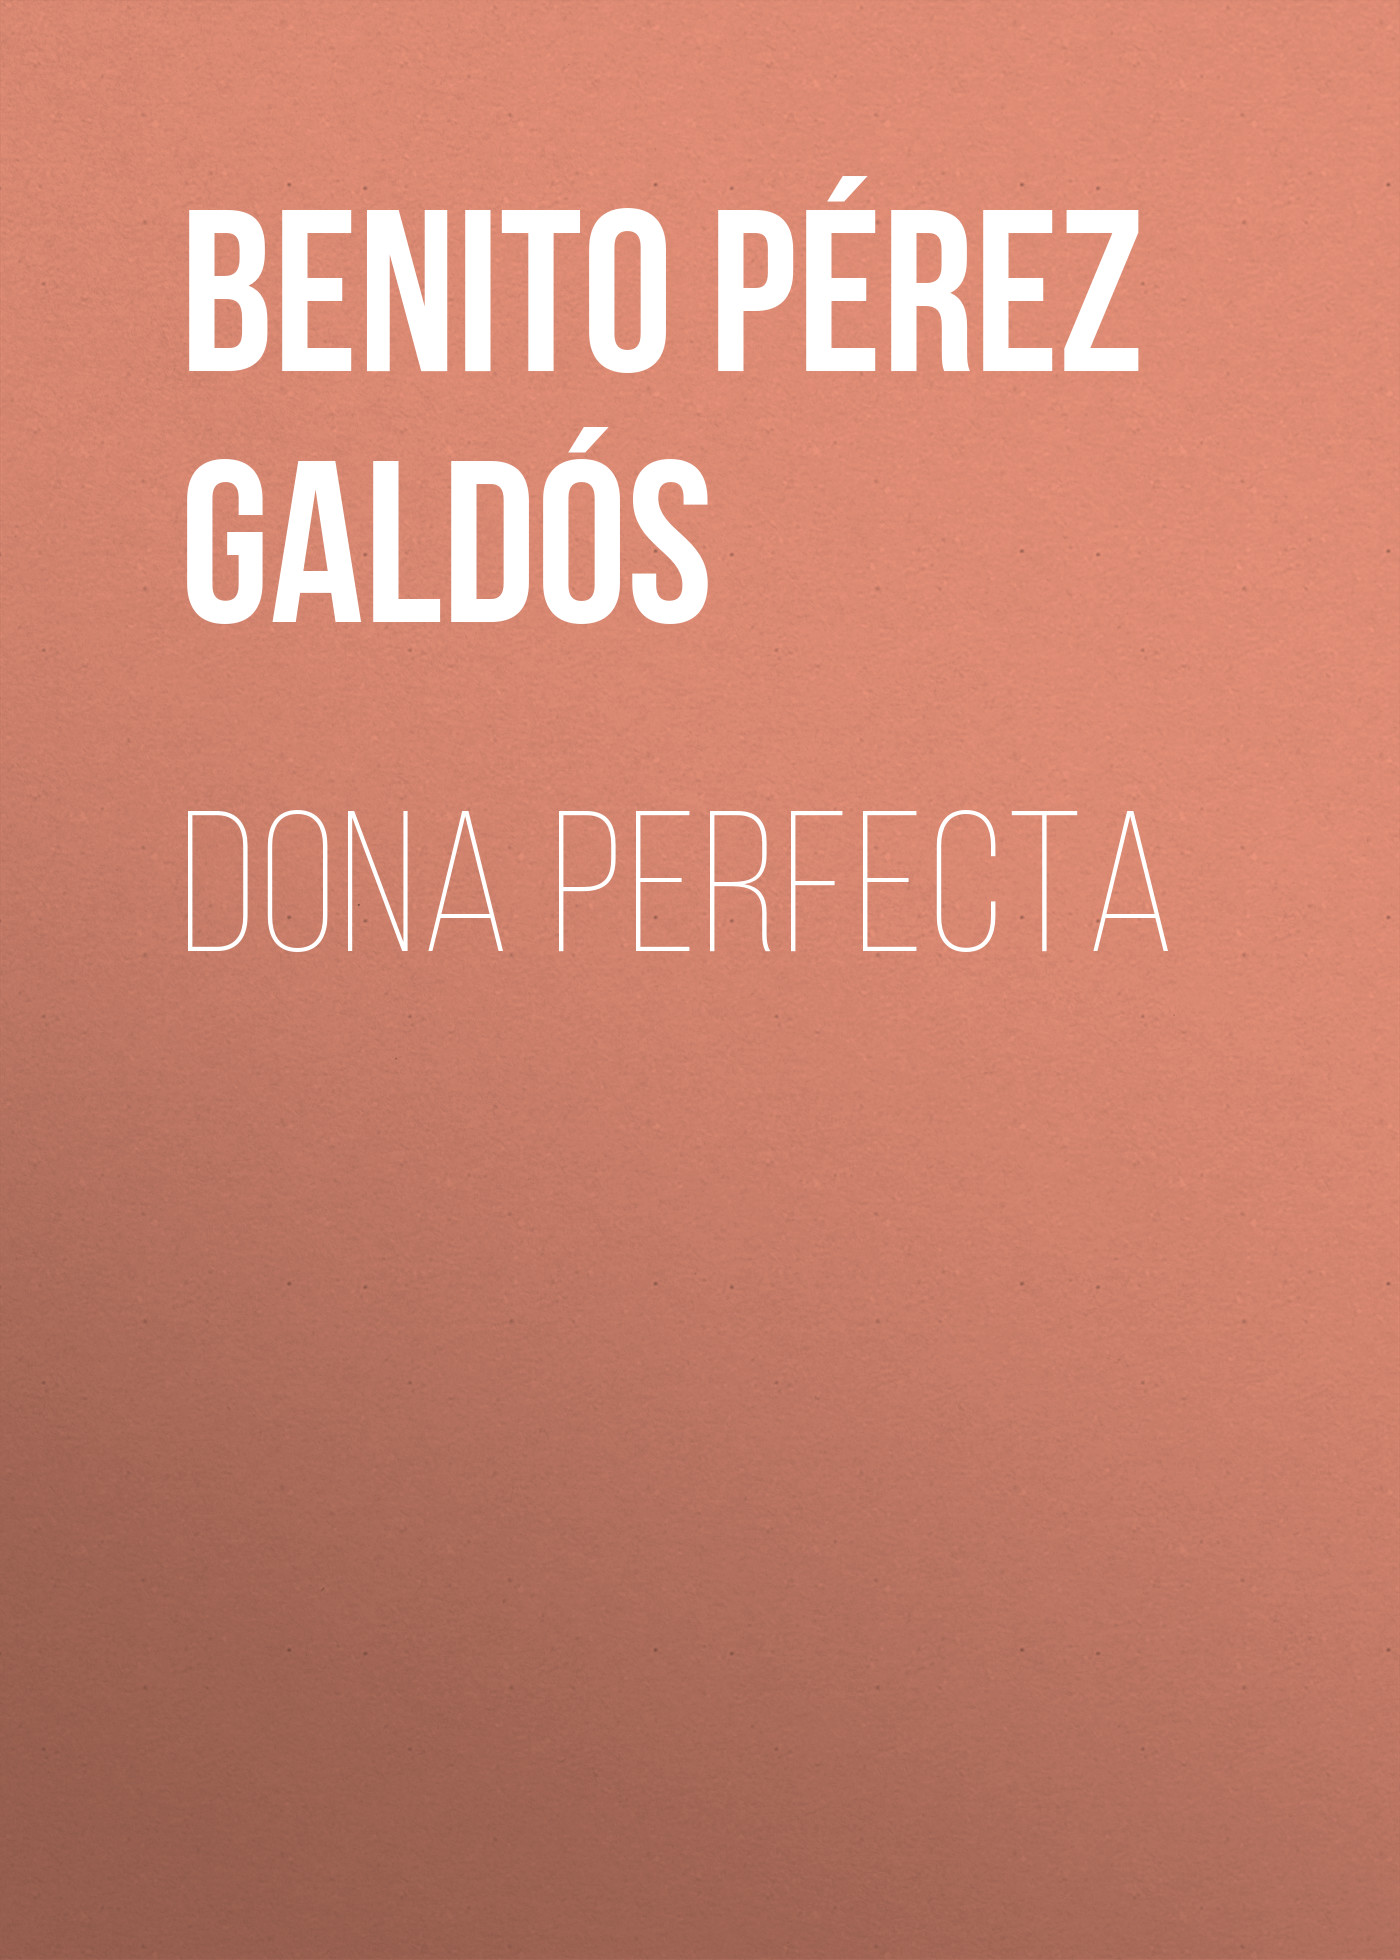 Книга Dona Perfecta из серии , созданная Benito Pérez Galdós, может относится к жанру Литература 19 века, Зарубежная старинная литература, Зарубежная классика, Зарубежные любовные романы. Стоимость электронной книги Dona Perfecta с идентификатором 36095789 составляет 0 руб.